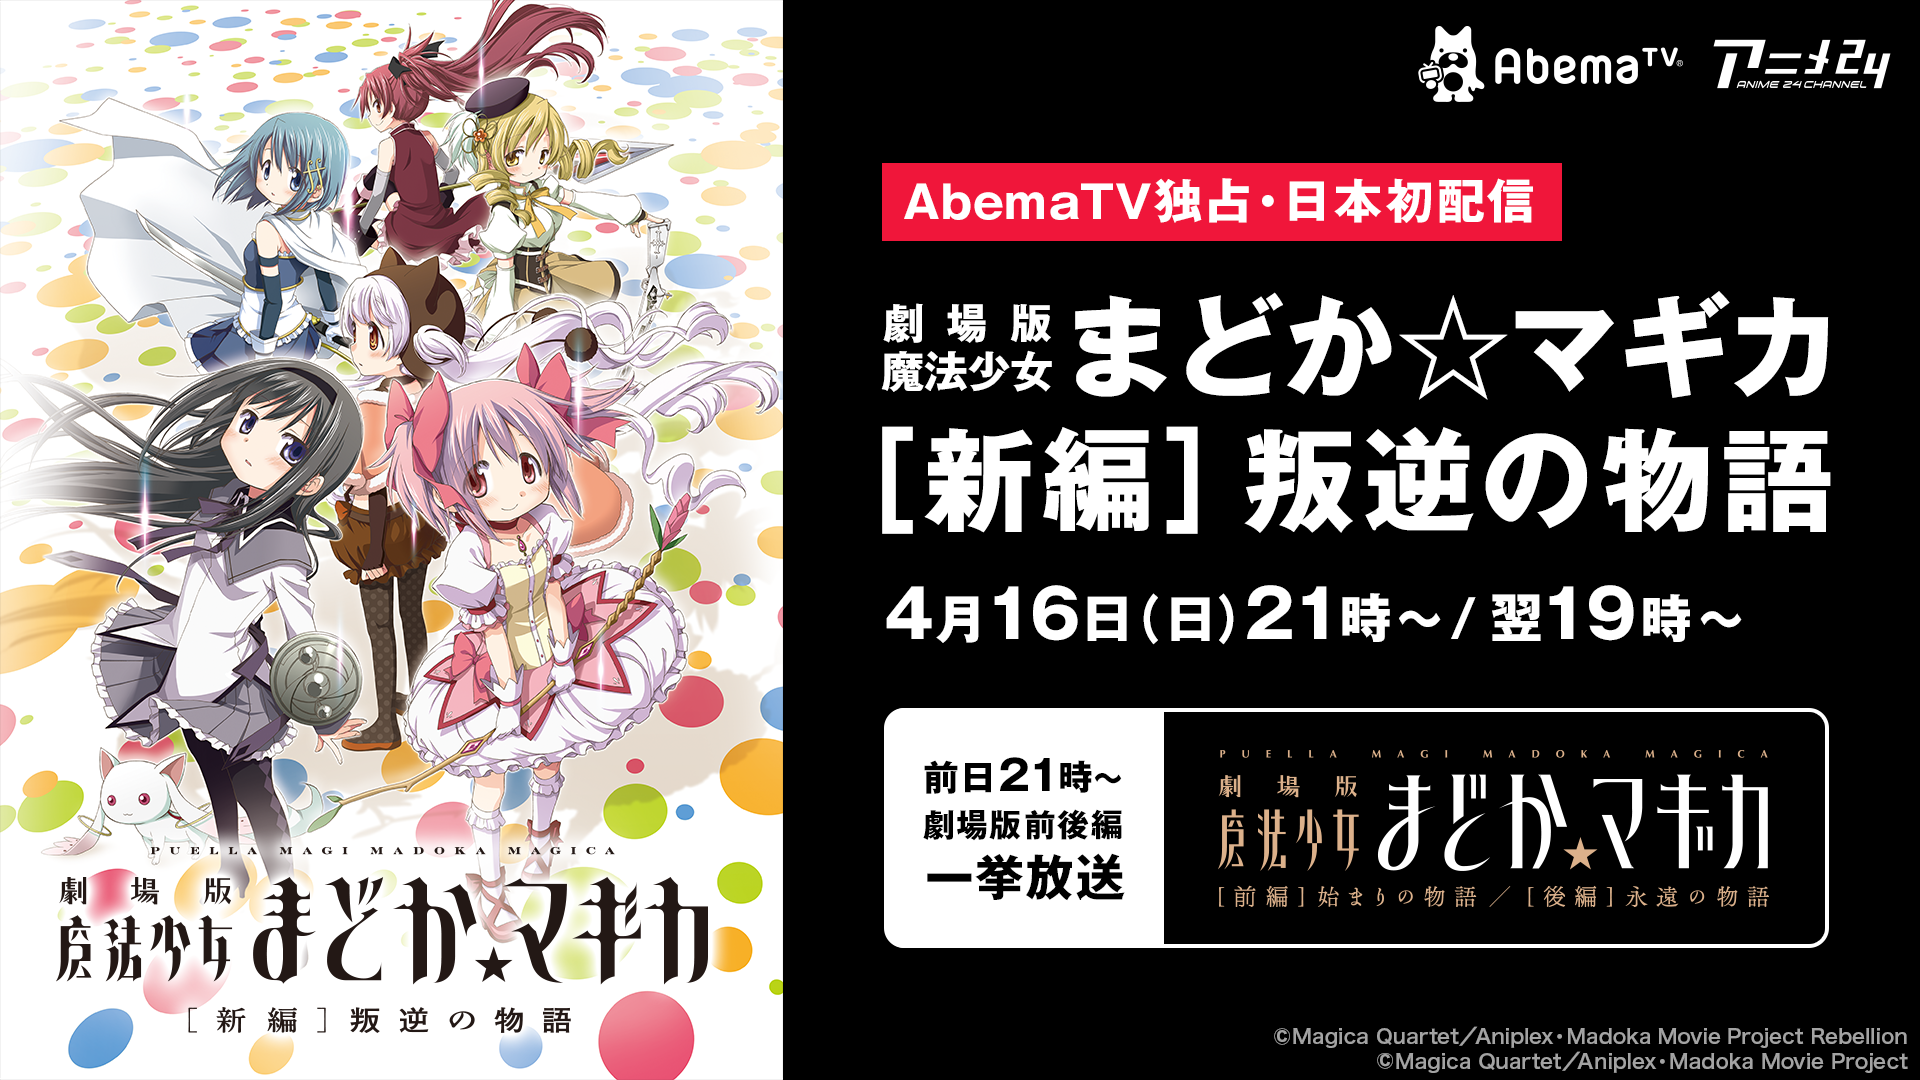 アニメ Abematv1周年記念 1ヶ月間のスペシャルプログラム 4月8日から1ヶ月間毎日スゴイ